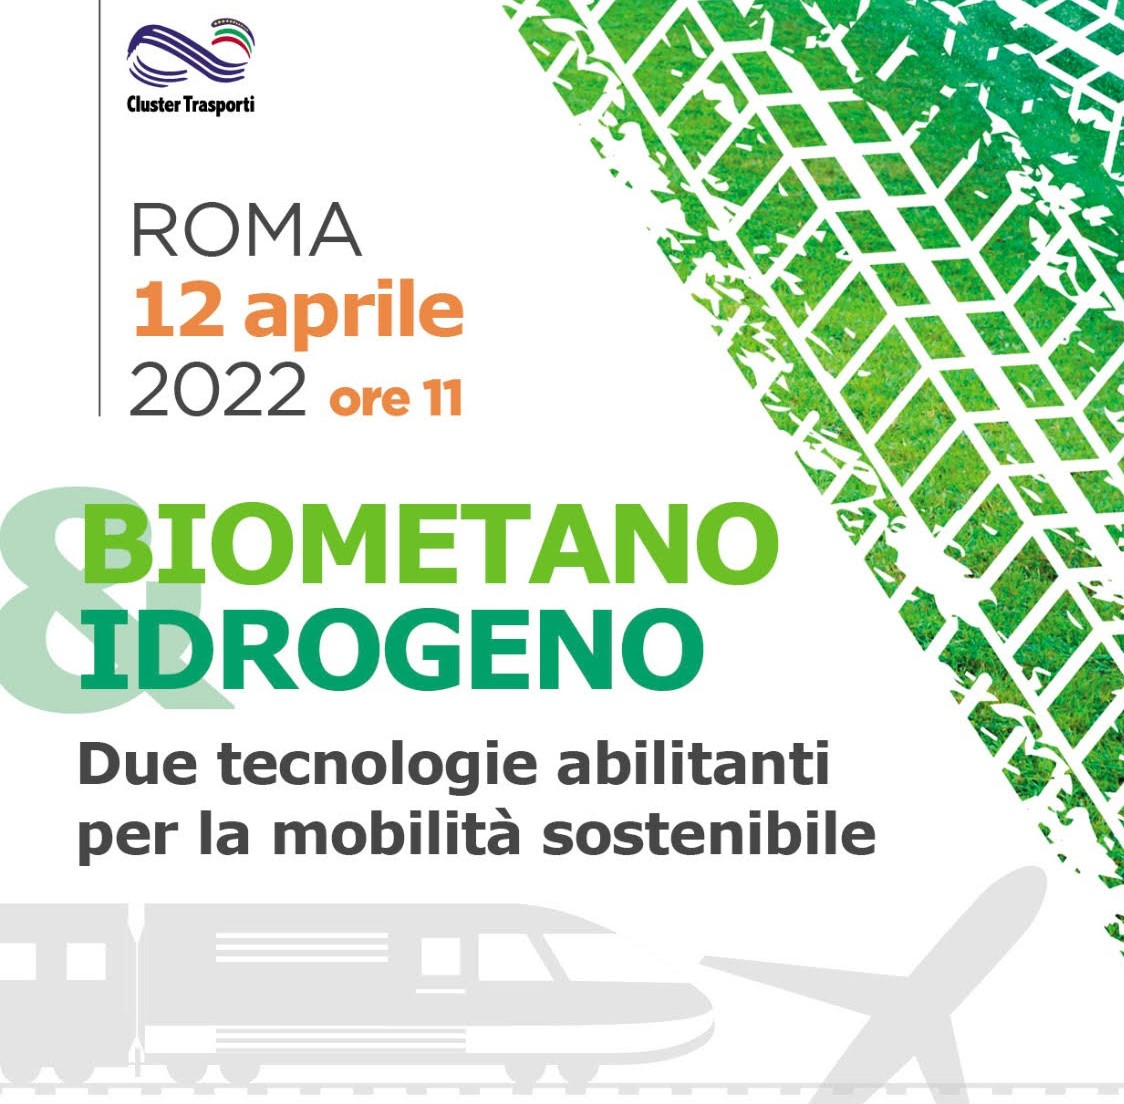 Biometano & Idrogeno – il 12 aprile il convegno del Cluster Trasporti